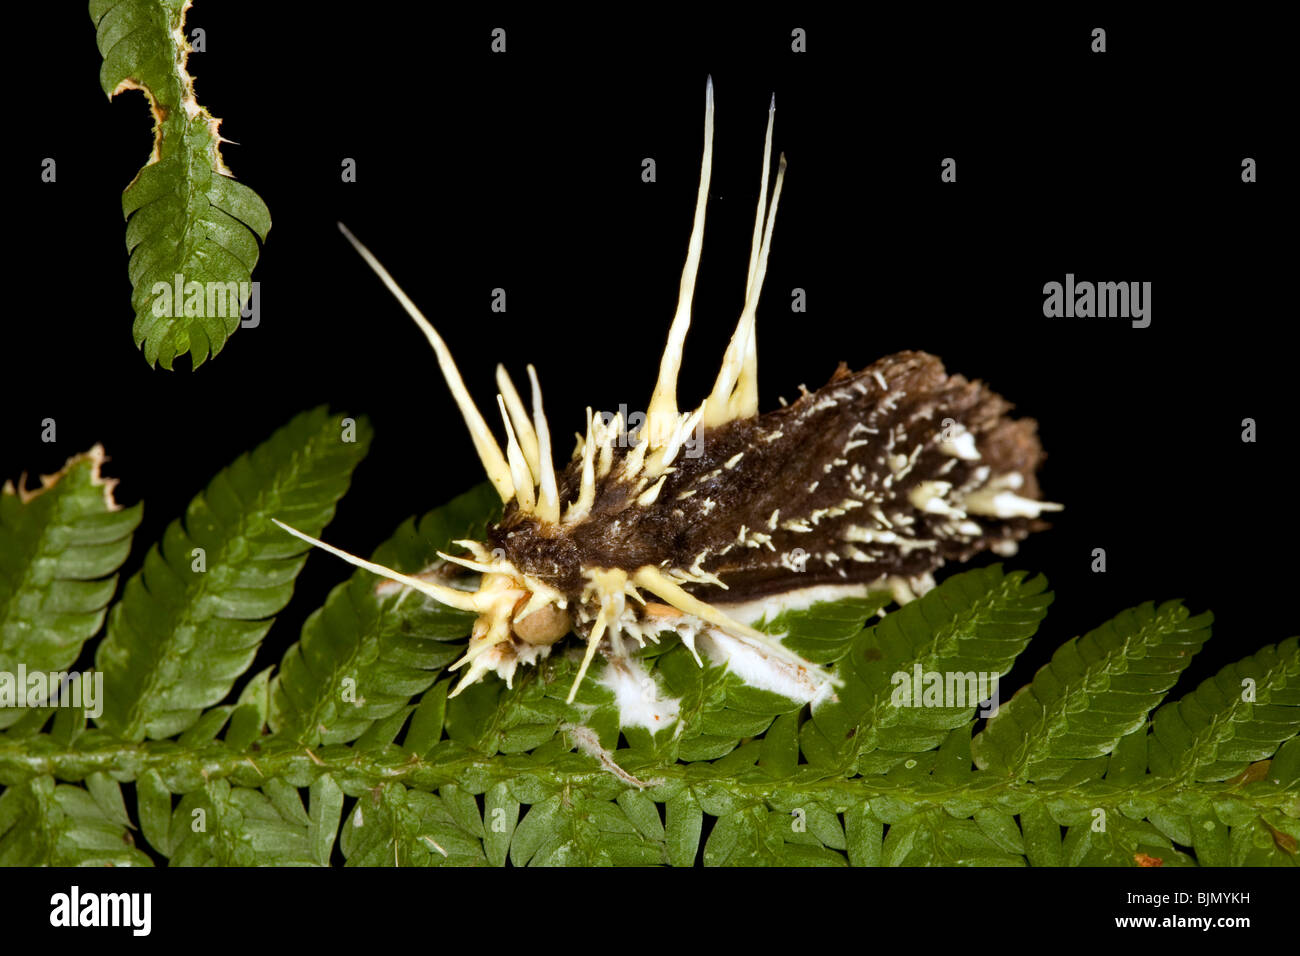 Fungo parassita Cordiceps sp. attacca una falena Foto Stock